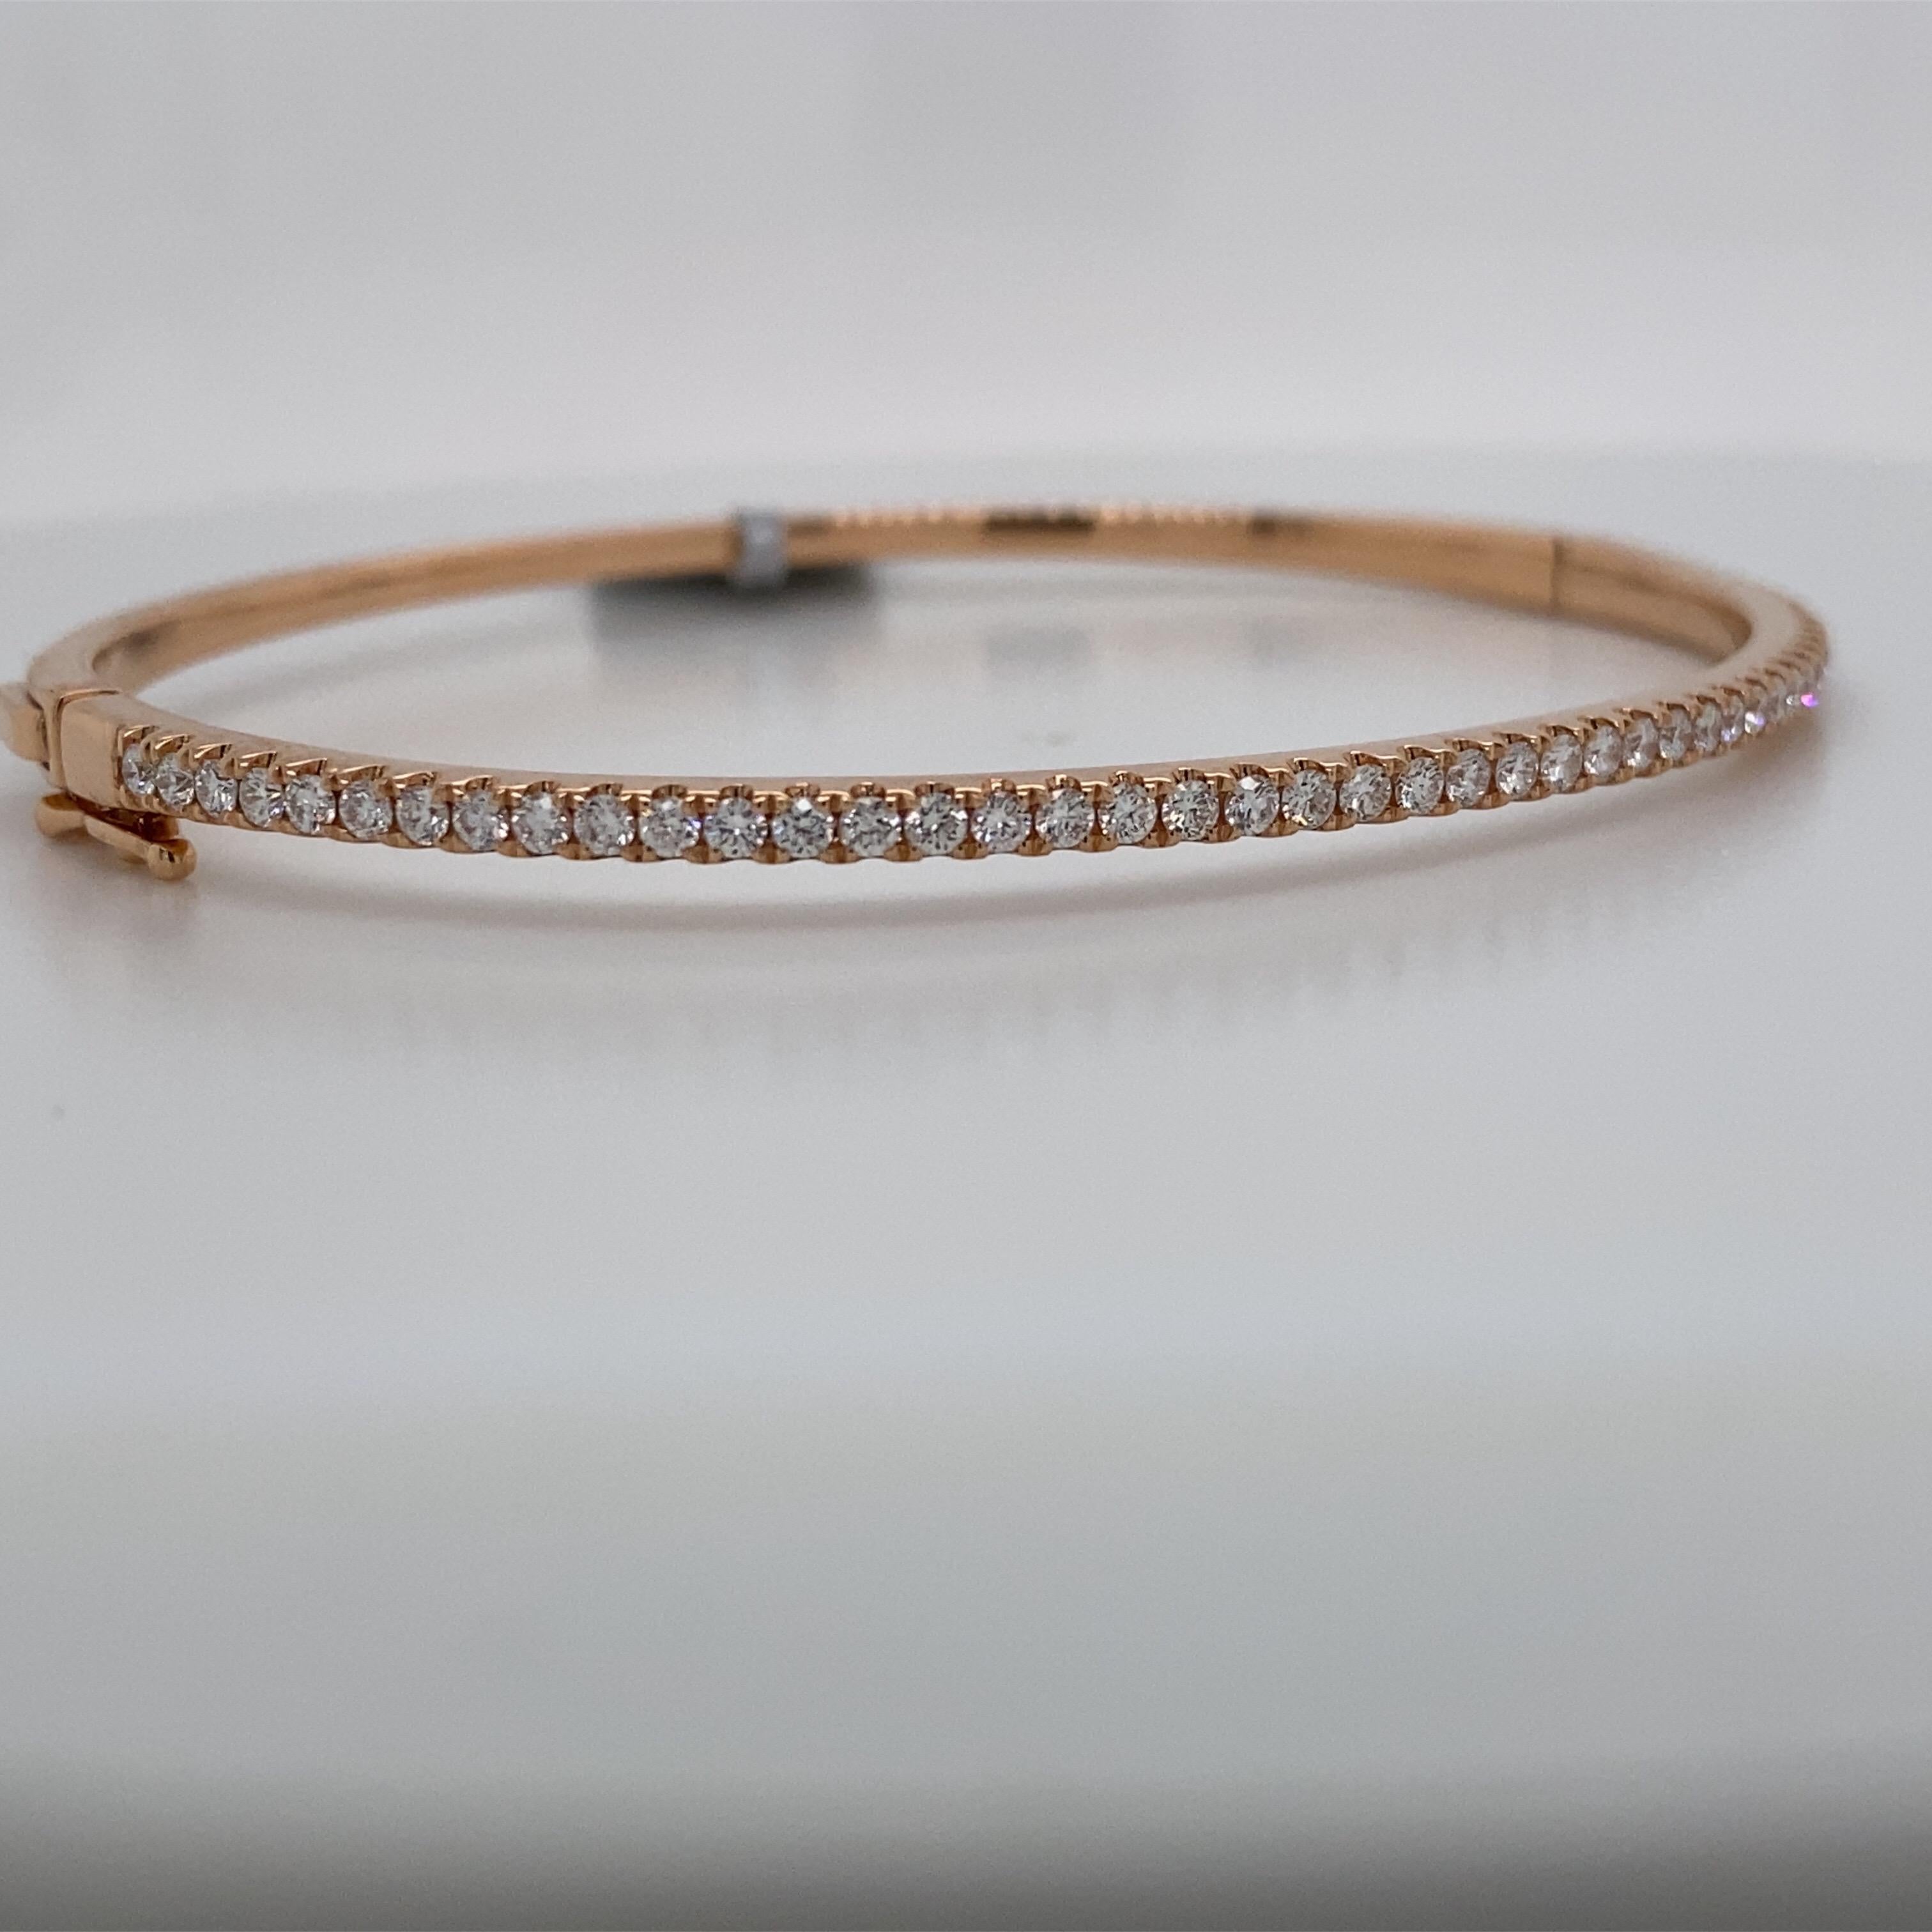 bracelet bangle en or rose 18 carats avec 45 brillants ronds pesant 0.85 carats.

Idéal pour l'empilage !
Disponible en or jaune et blanc. 